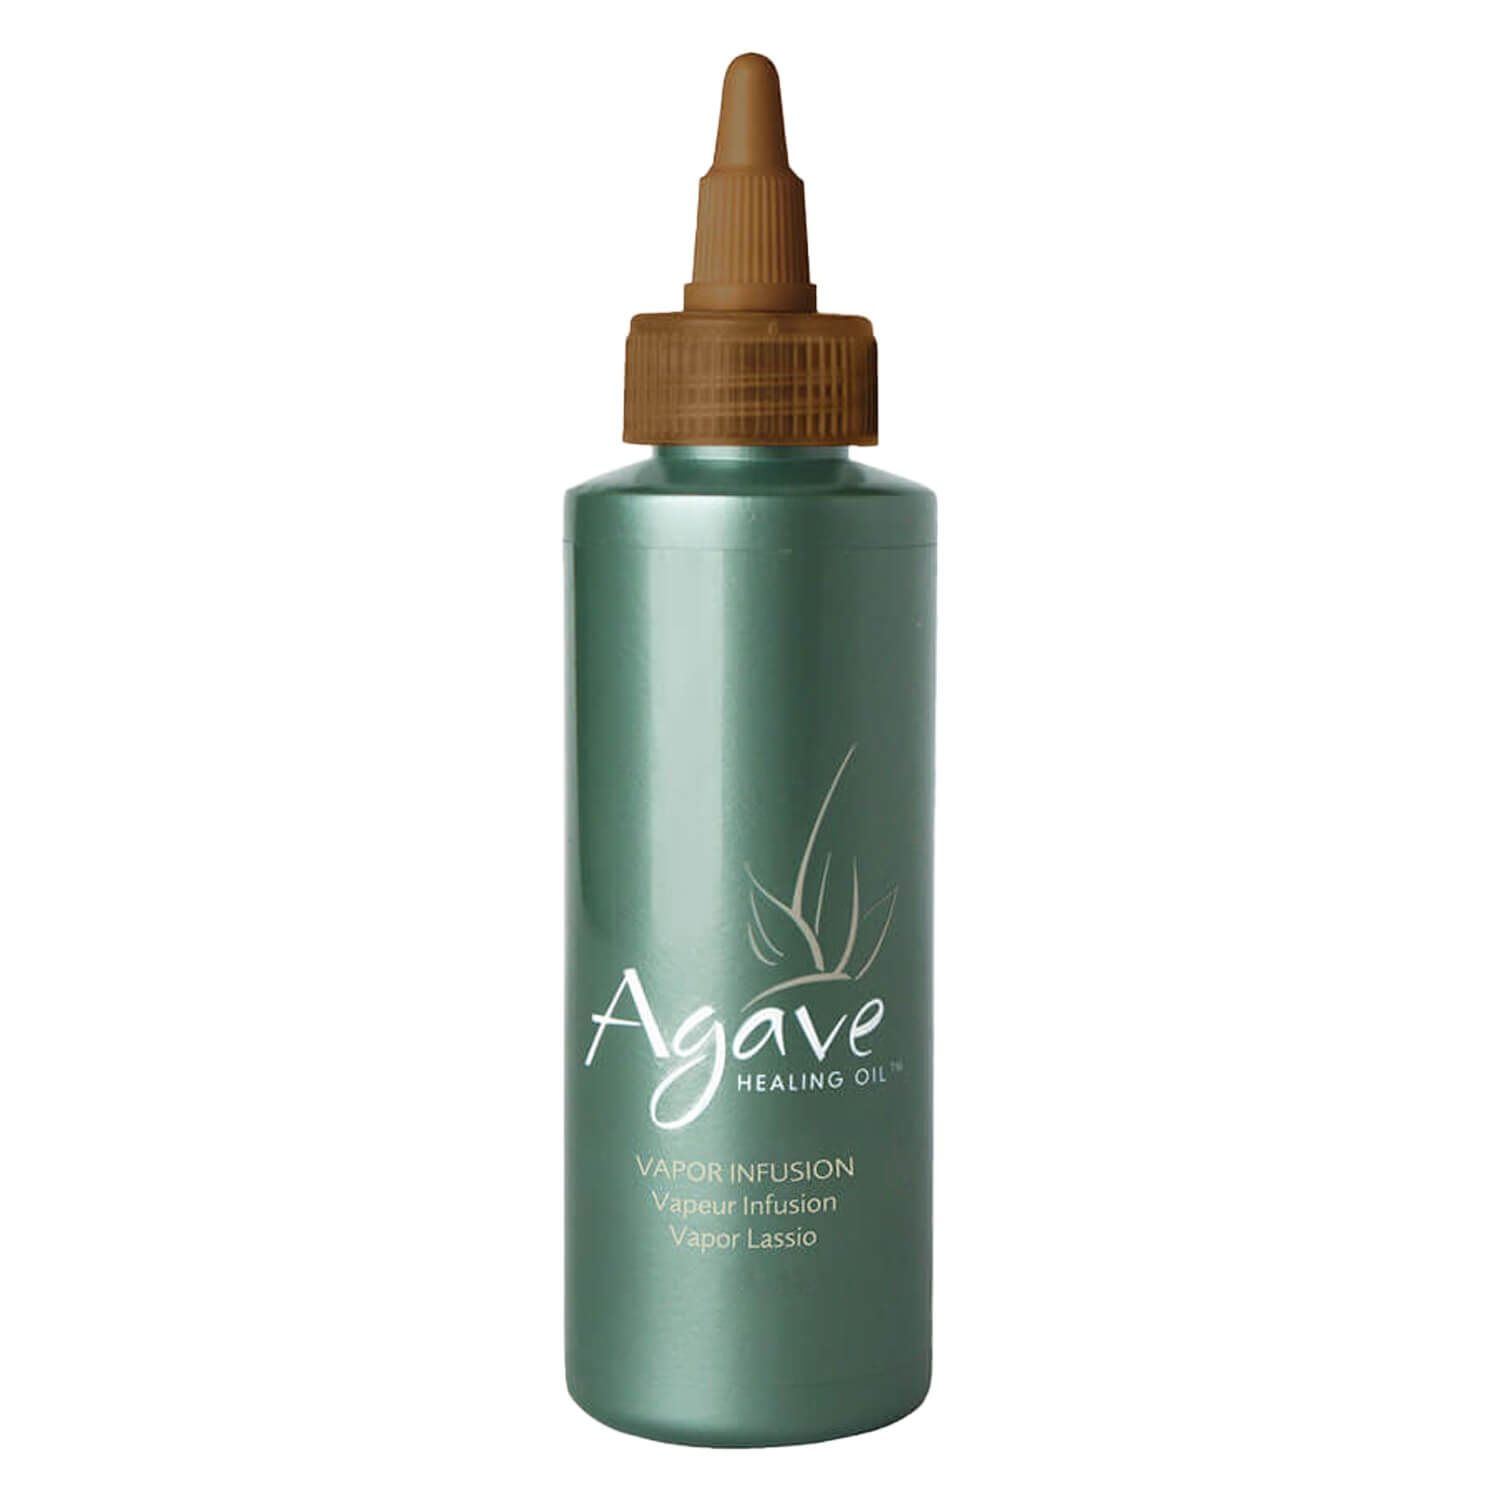 Produktbild von Agave - Healing Vapor Infusion